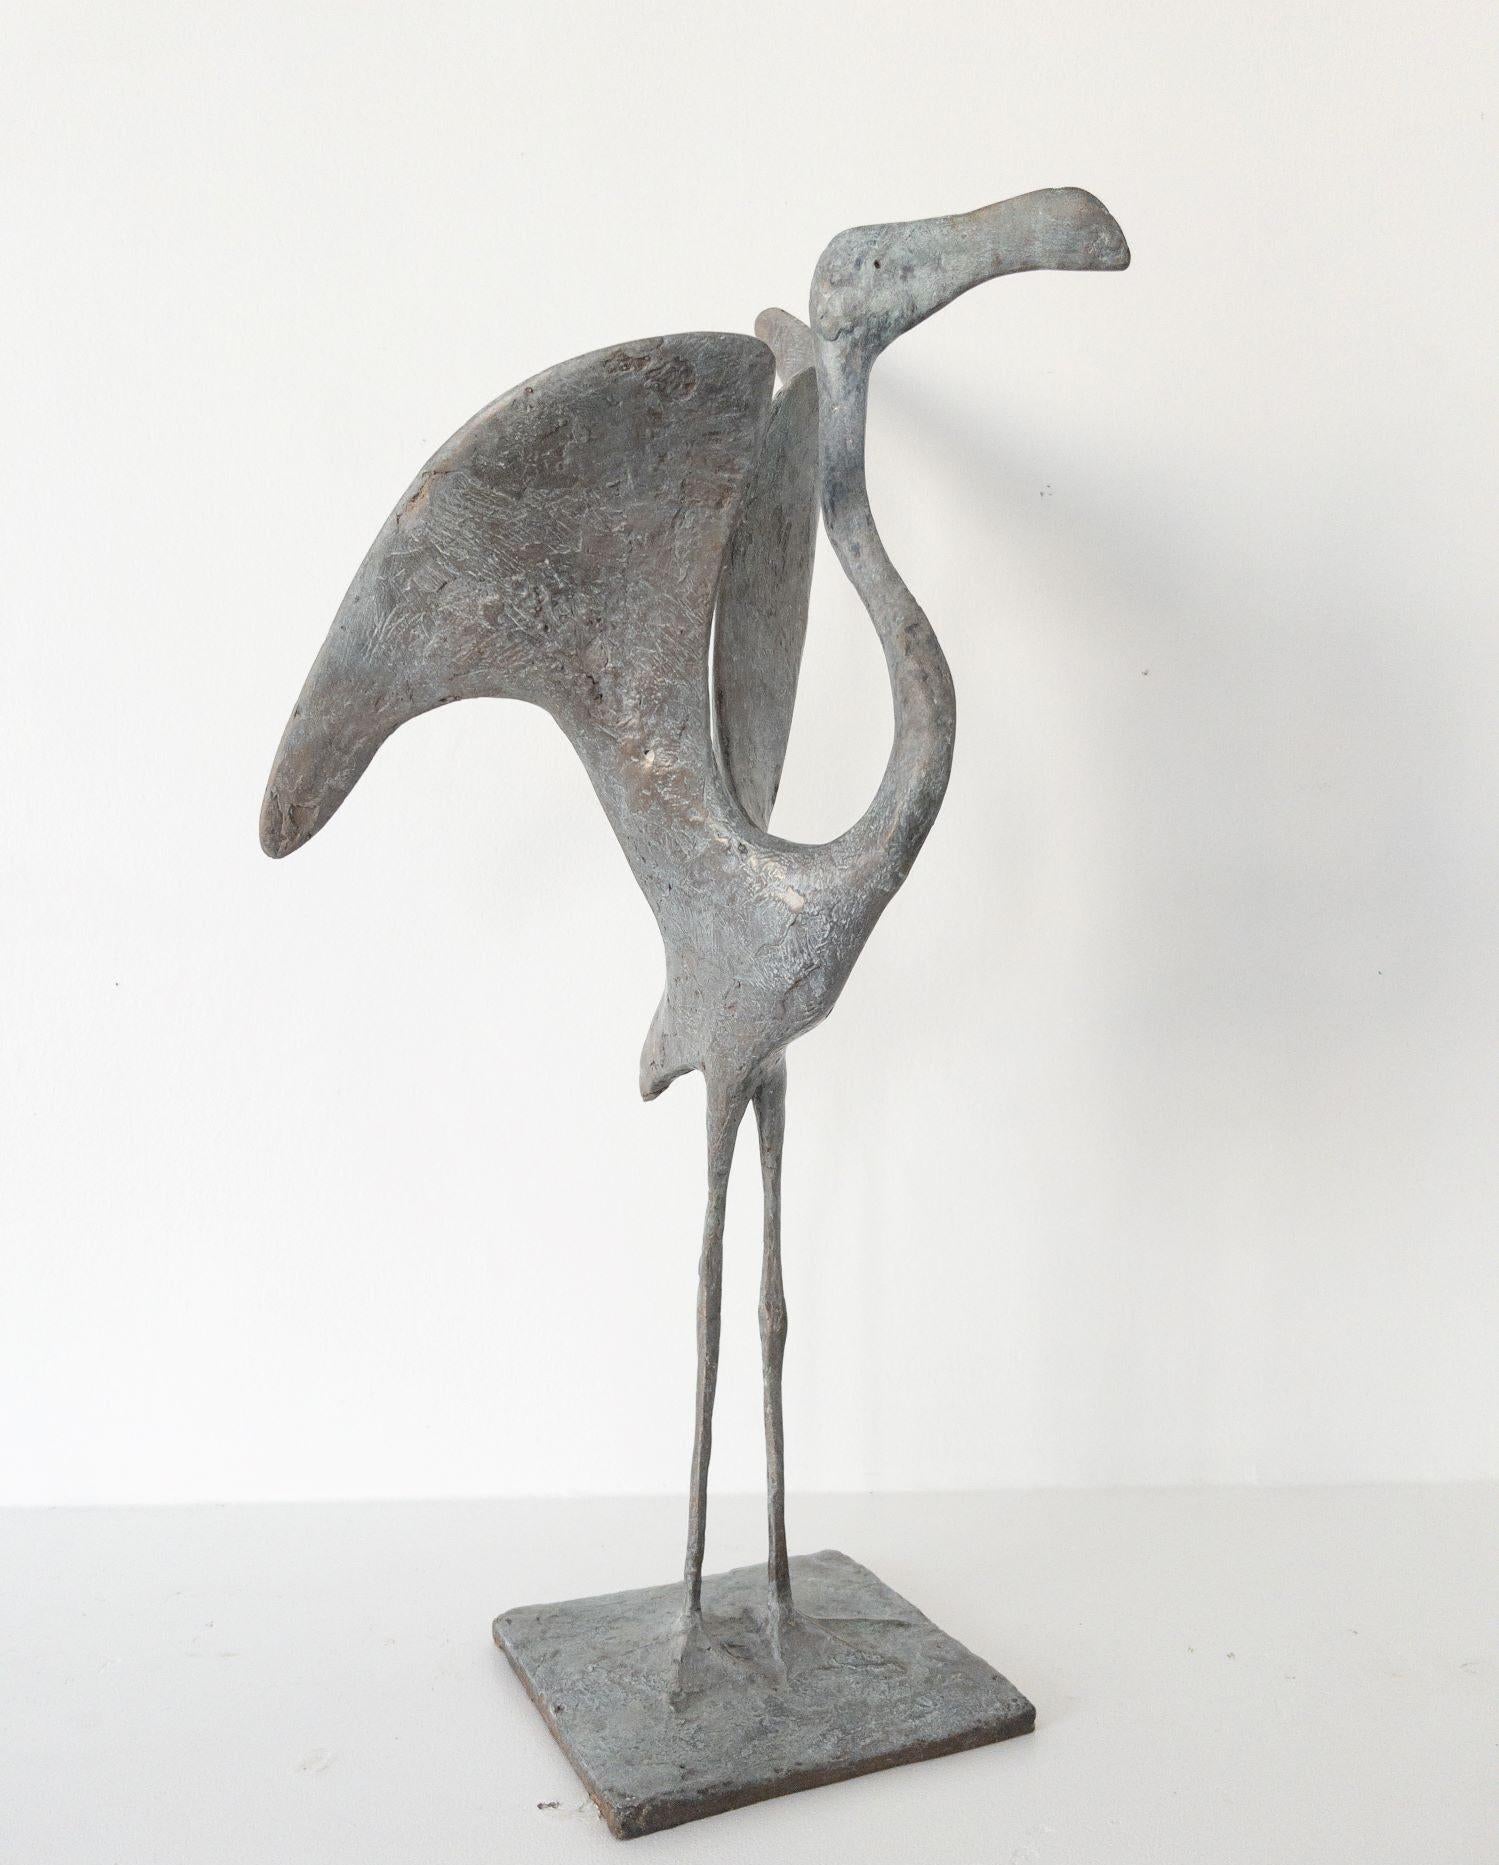 Flamingo I est une sculpture en bronze de l'artiste contemporain français Pierre Yermia, dont les dimensions sont 61 × 33 × 31 cm (24 × 13 × 12,2 in). 
La sculpture est signée et numérotée, elle fait partie d'une édition limitée à 8 exemplaires + 4